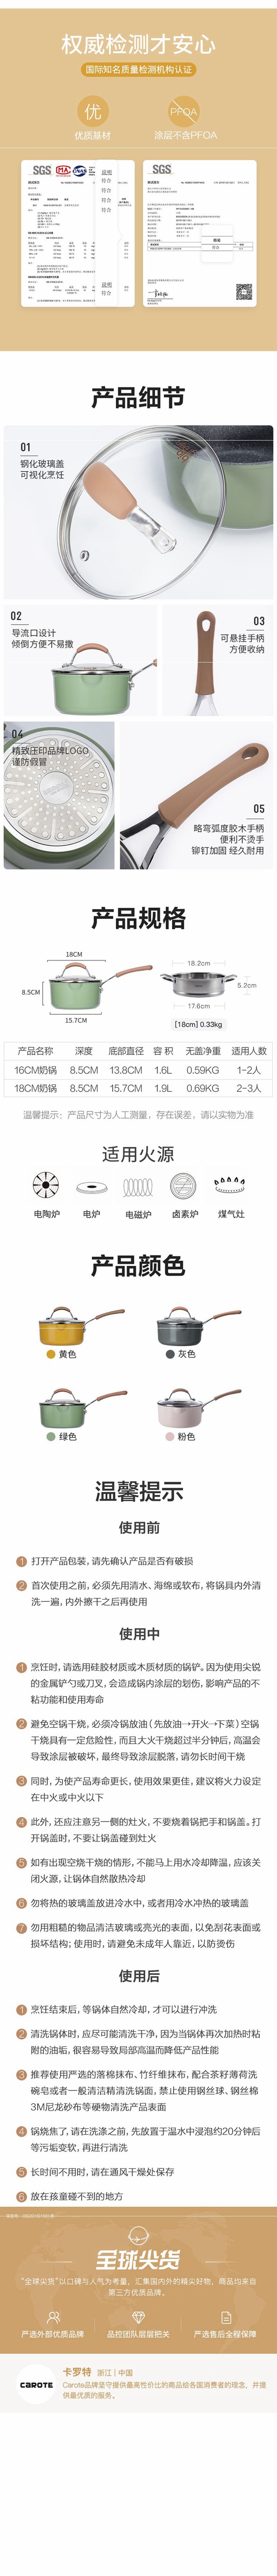 网易严选多色可选多功能锅 一锅多用轻松烹饪 奶锅 (粉色)18cm+蒸笼